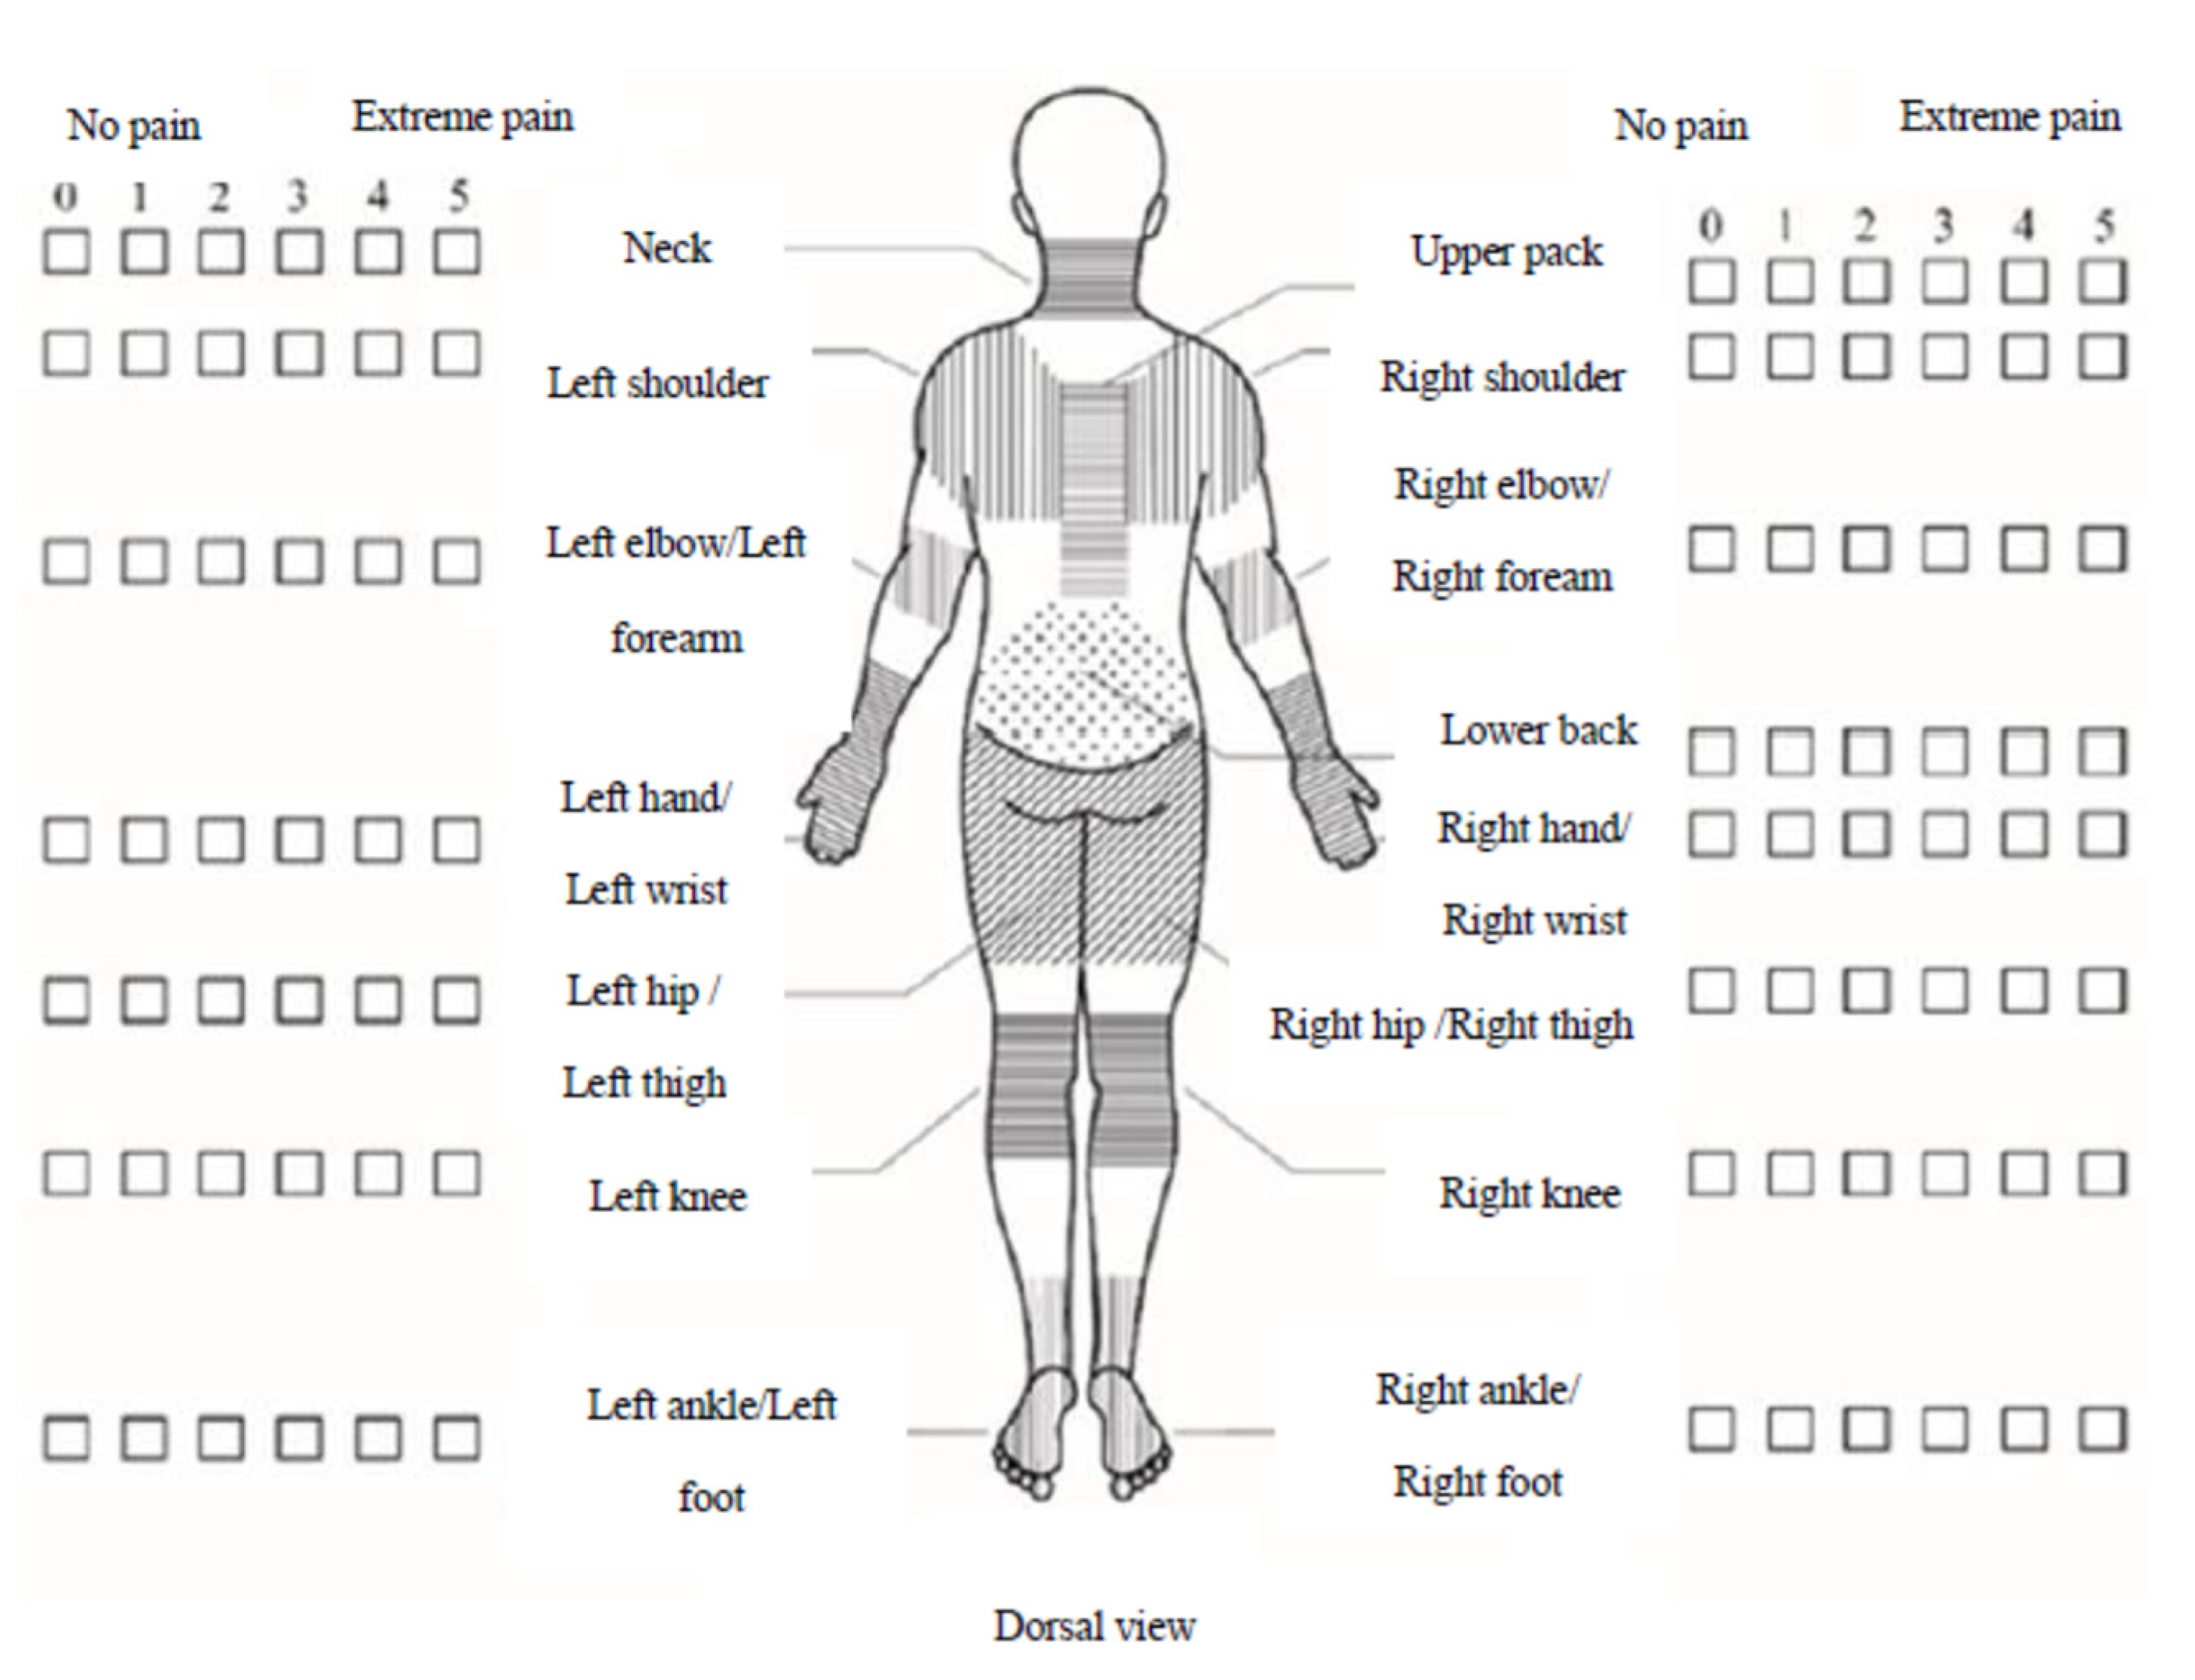 Neck & Shoulders Massage - Li's Massage Therapy and Reflexology